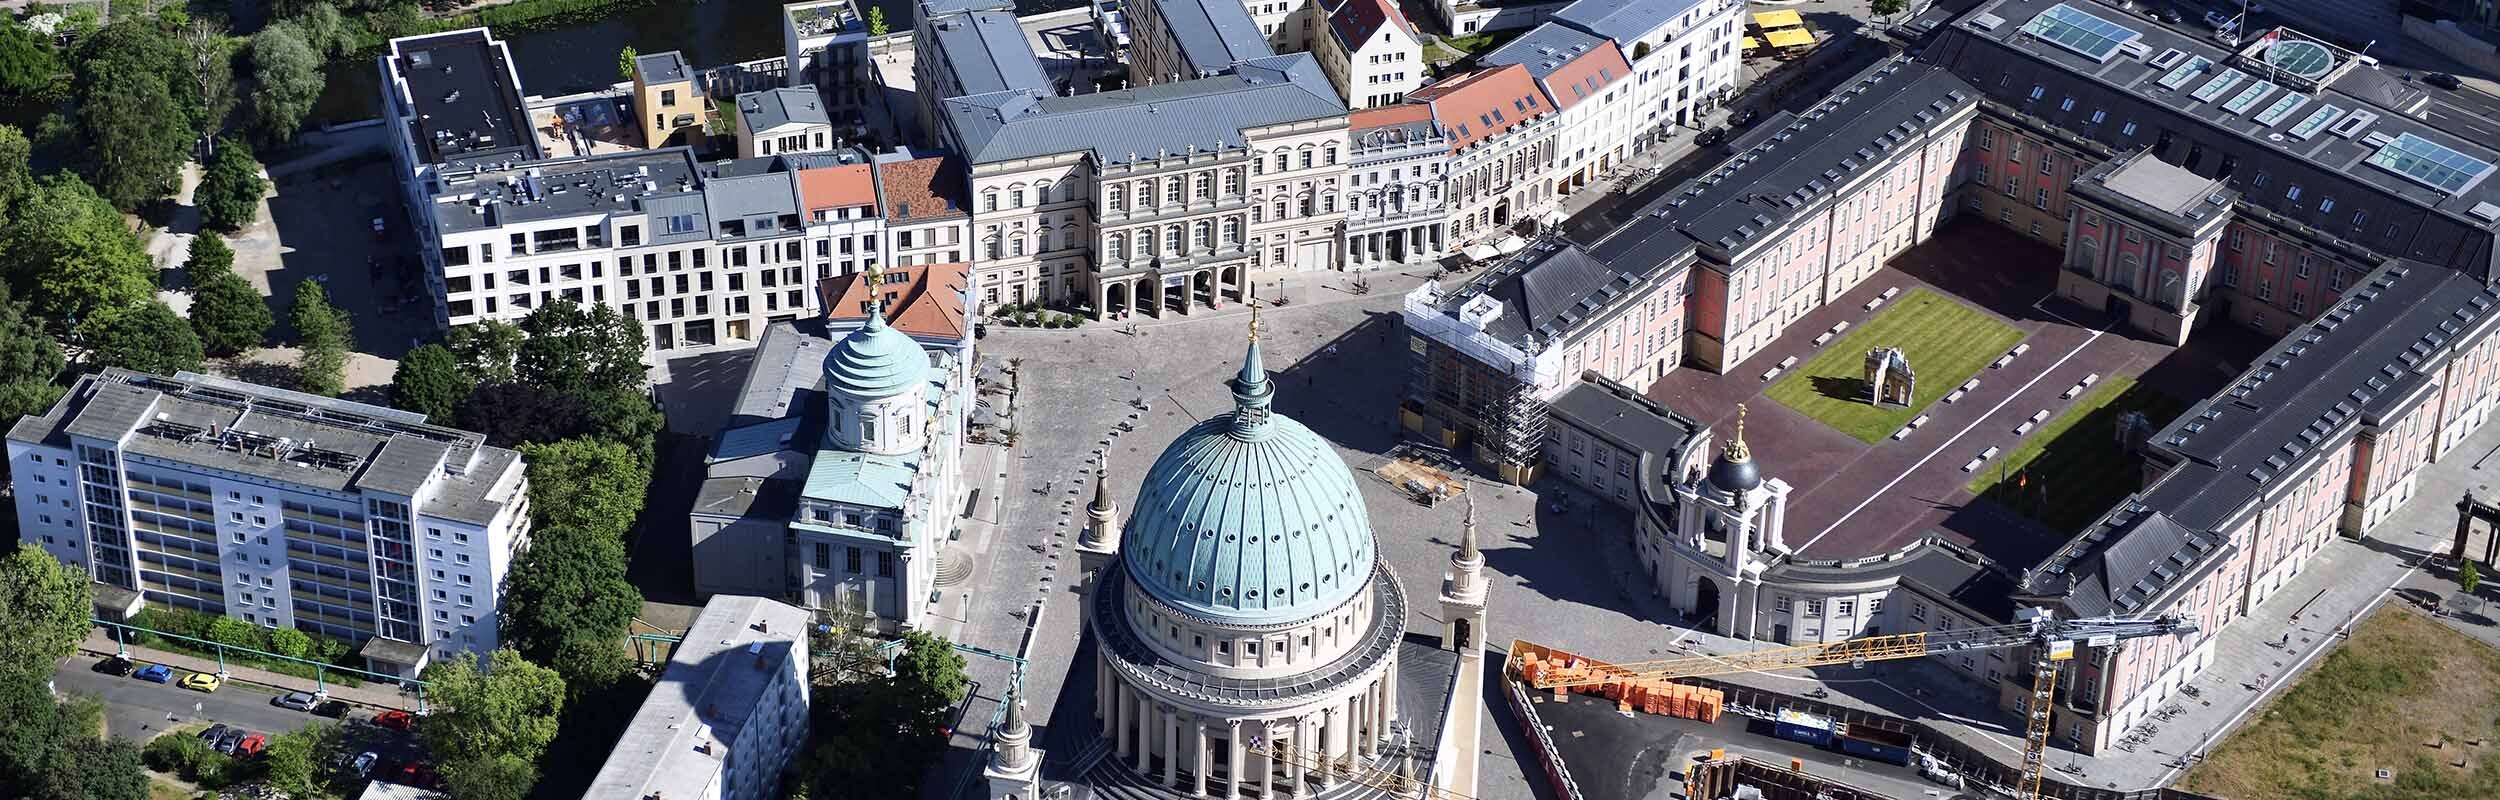 Foto: Luftbild vom Alten Markt mit Haveluferbebauung, Landtag, Nikolaikirche und Altem Rathaus.